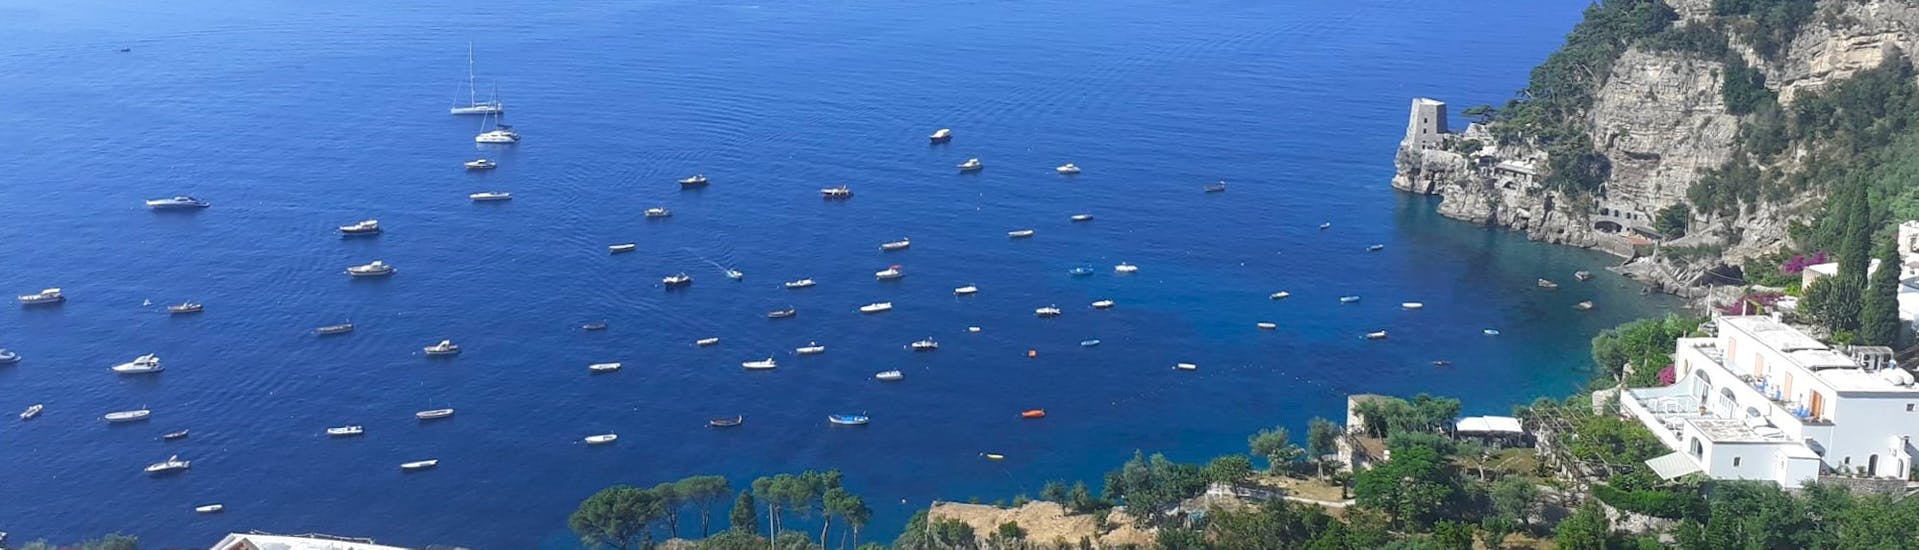 Blick auf die Amalfiküste von oben während der privaten Bootstour von Positano nach Capri - Halbtags